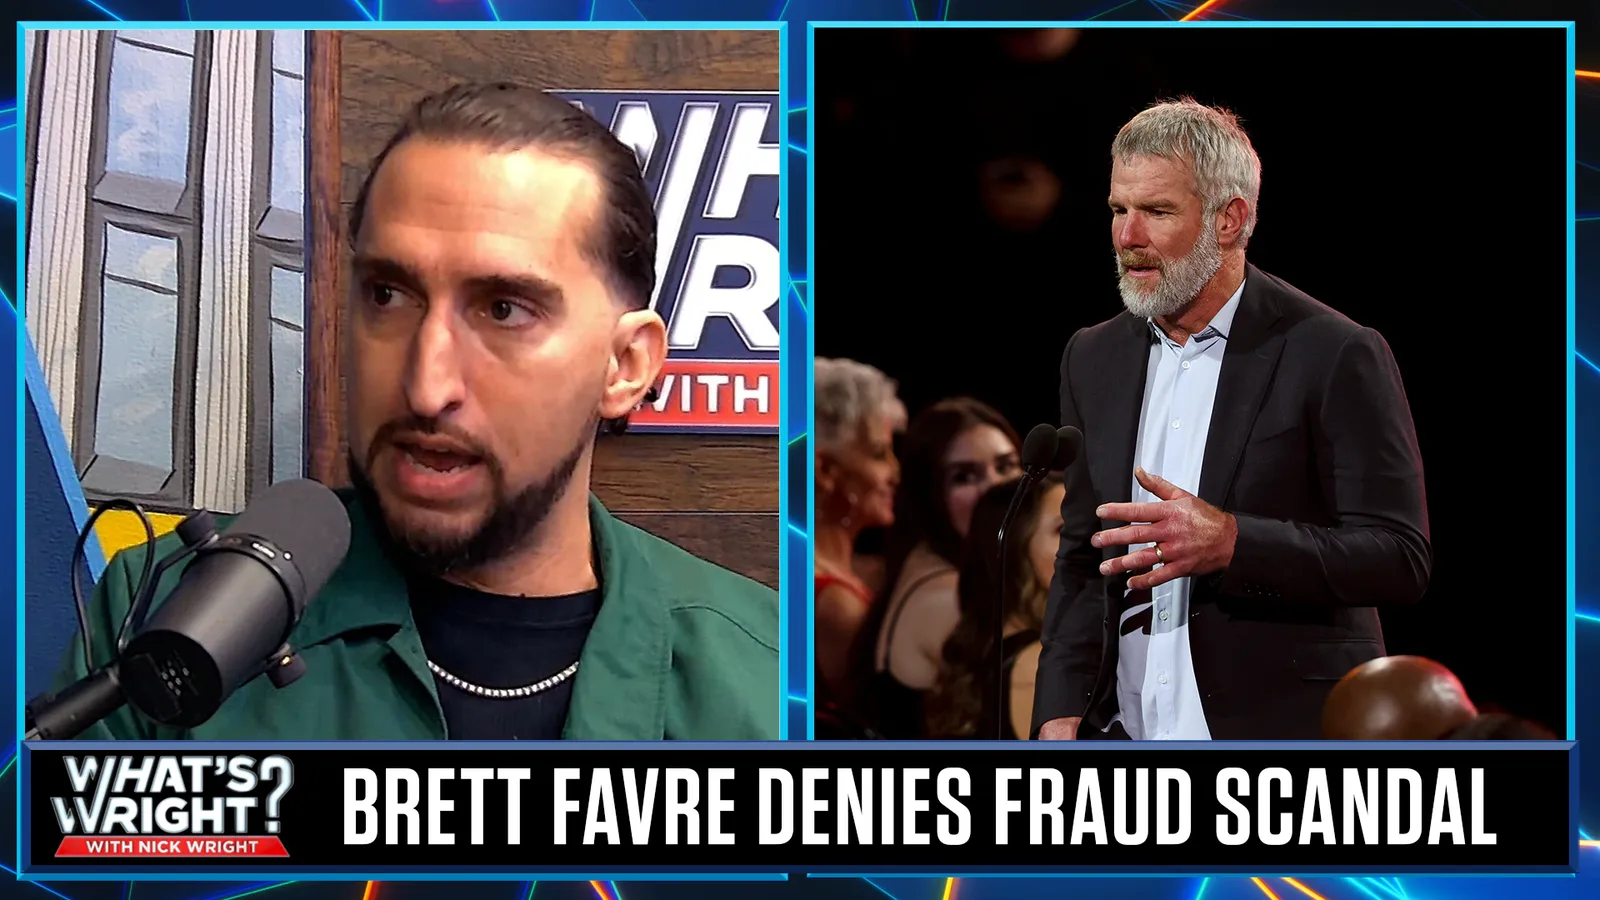 Nick does not buy Brett Favre denial in Mississippi fraud scandal | What's Wright?